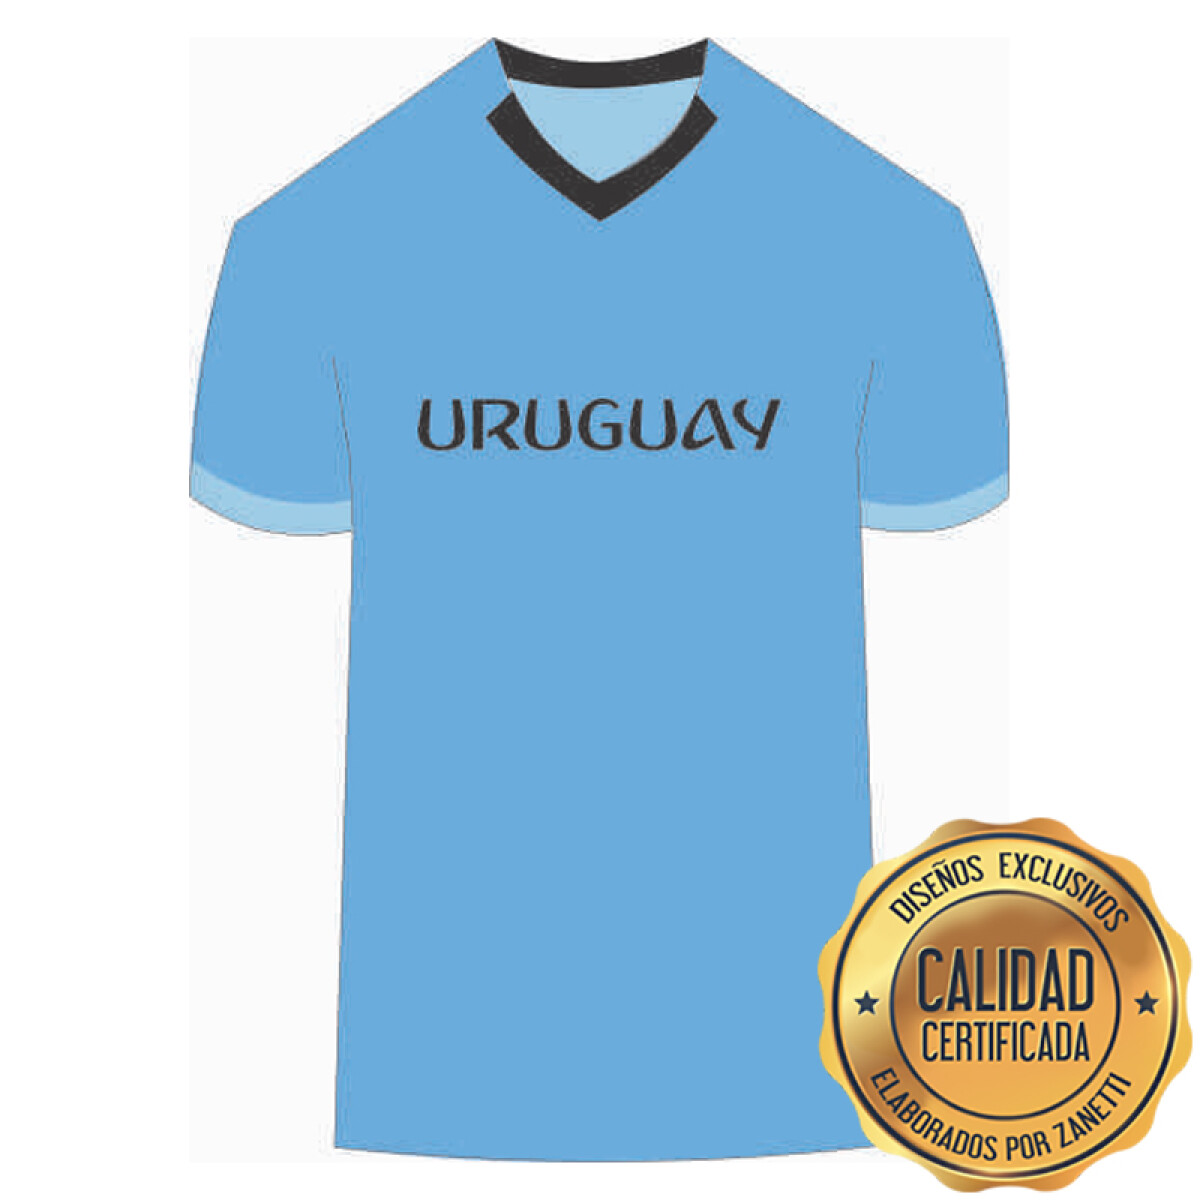 Lámina Uruguay - Camiseta Celeste Frente 